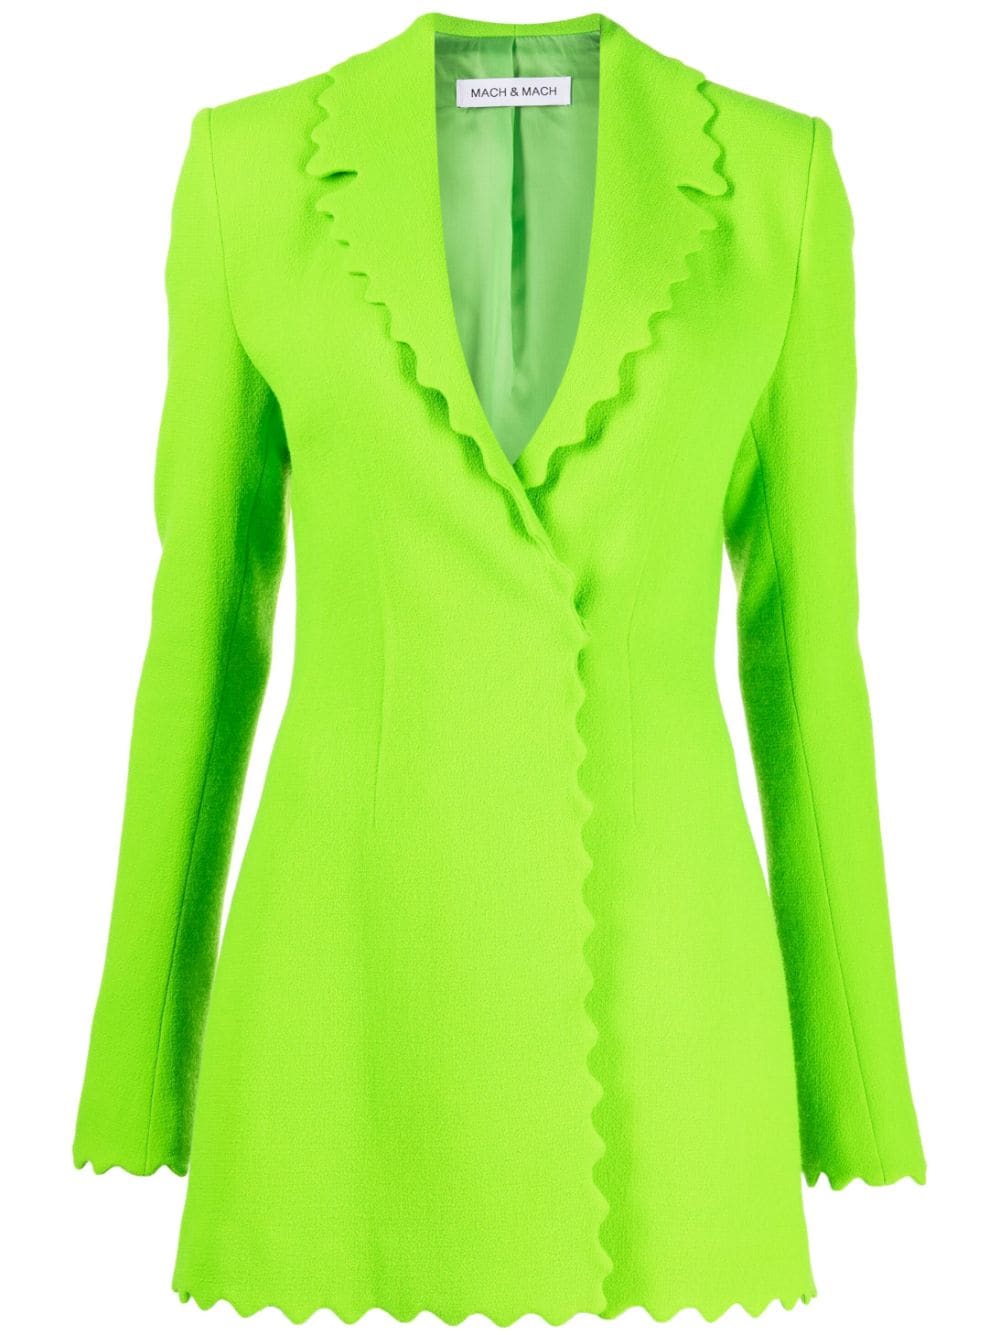 MACH & MACH scallop-edge wool blazer - Green von MACH & MACH